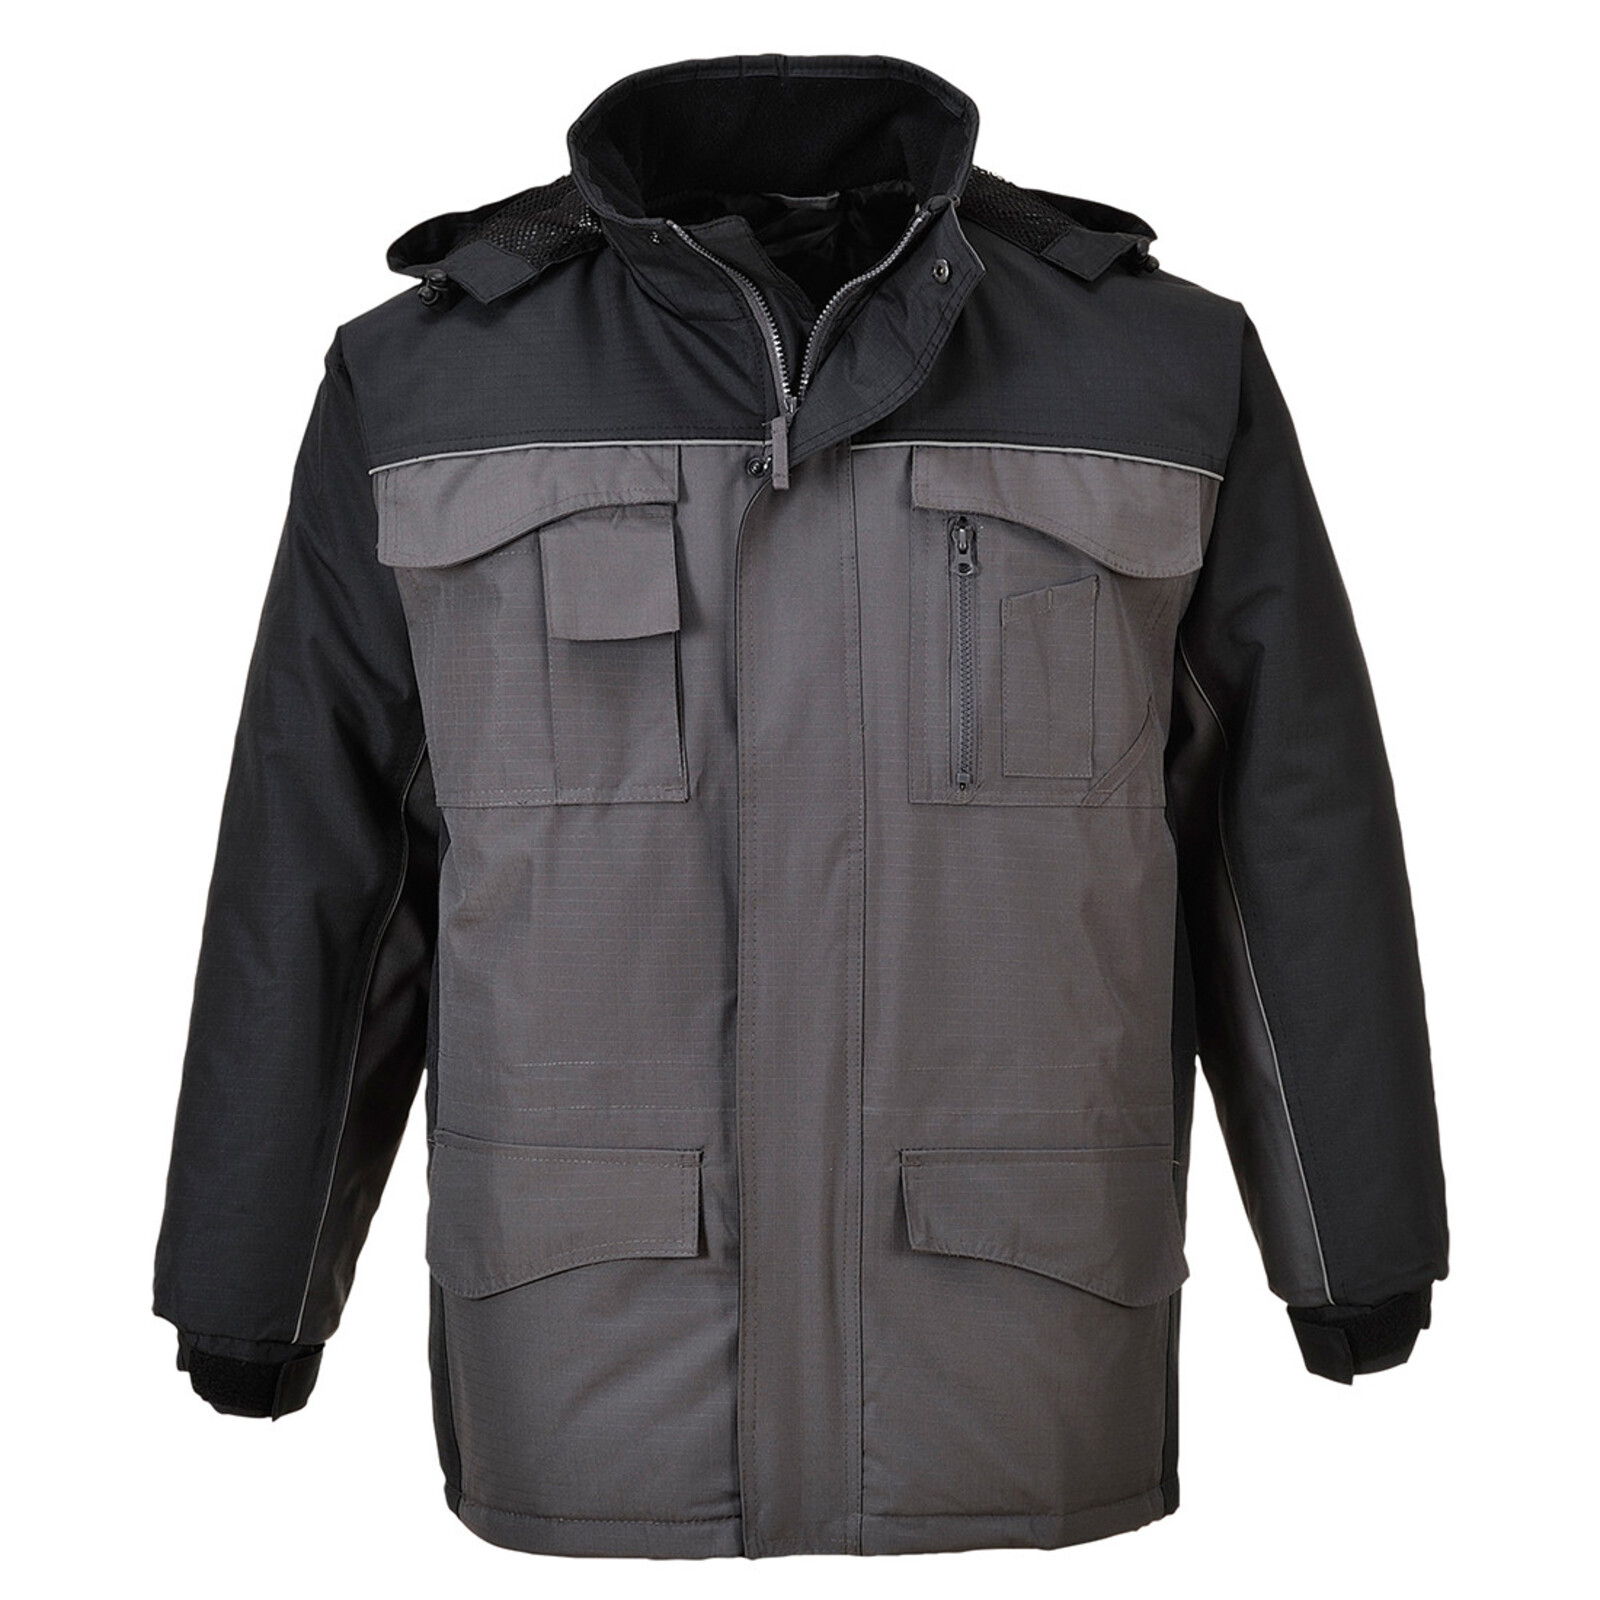 Pánska zimná bunda Portwest S562 - veľkosť: M, farba: čierna/sivá